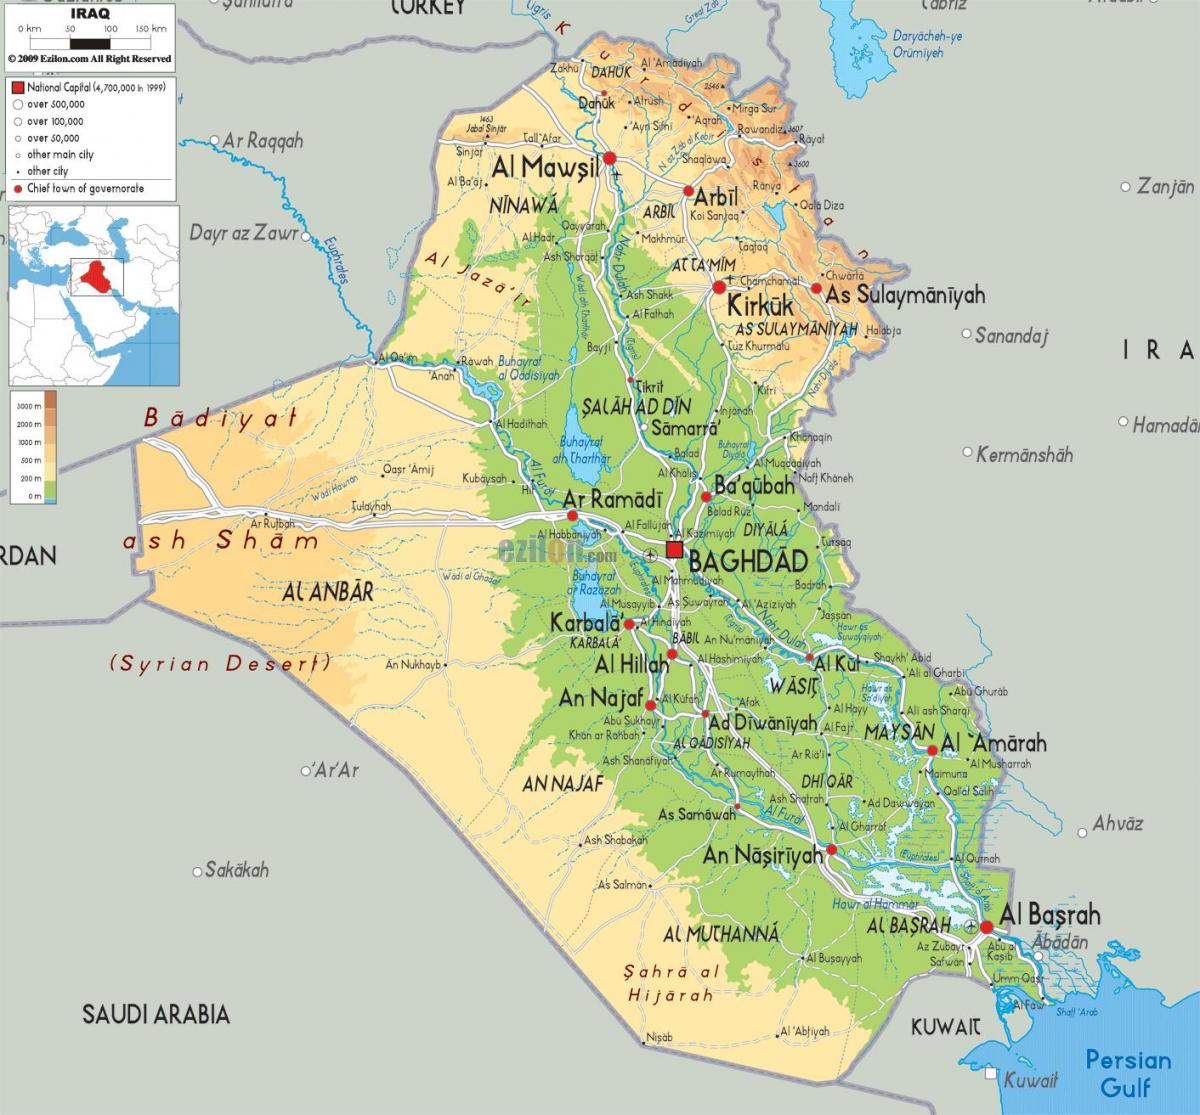 Ramani ya Iraq jiografia